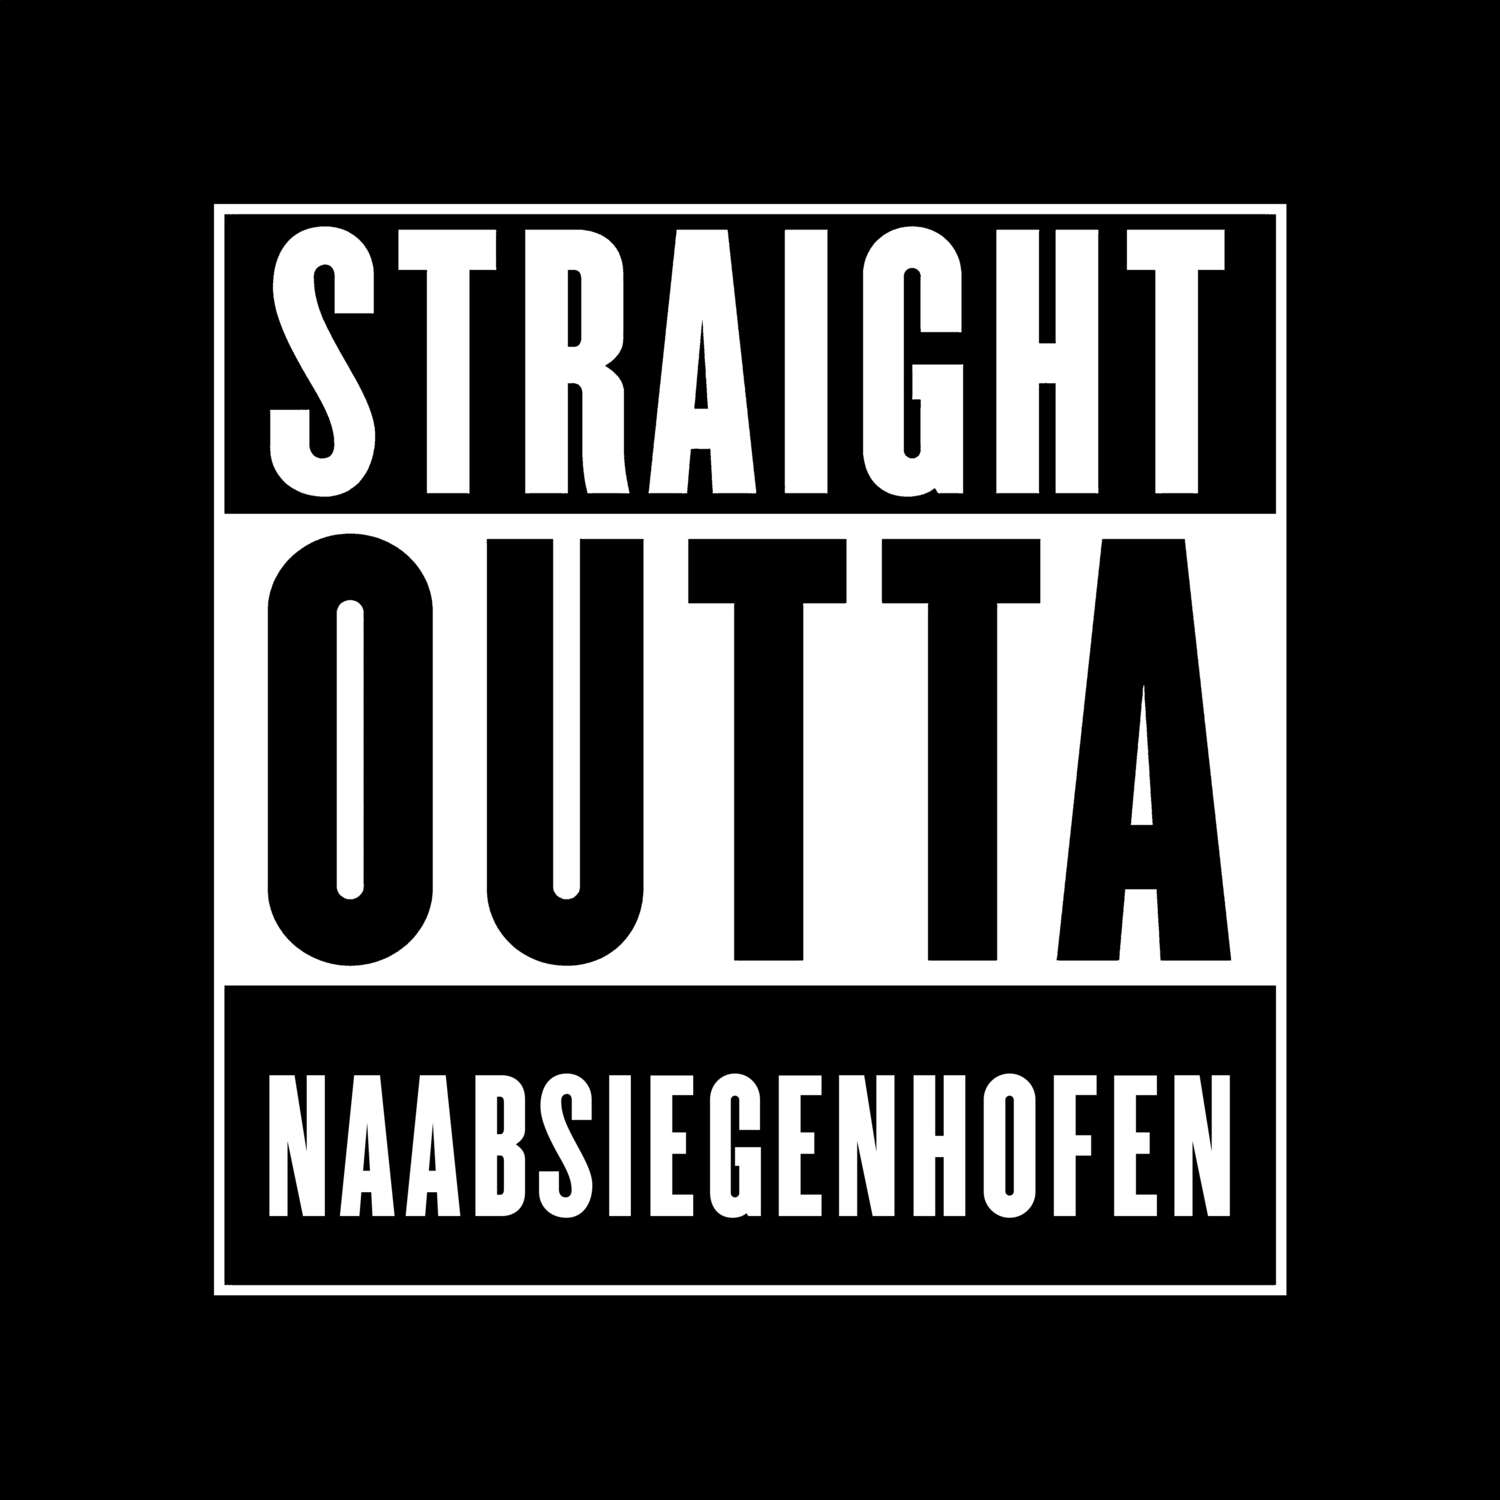 Naabsiegenhofen T-Shirt »Straight Outta«